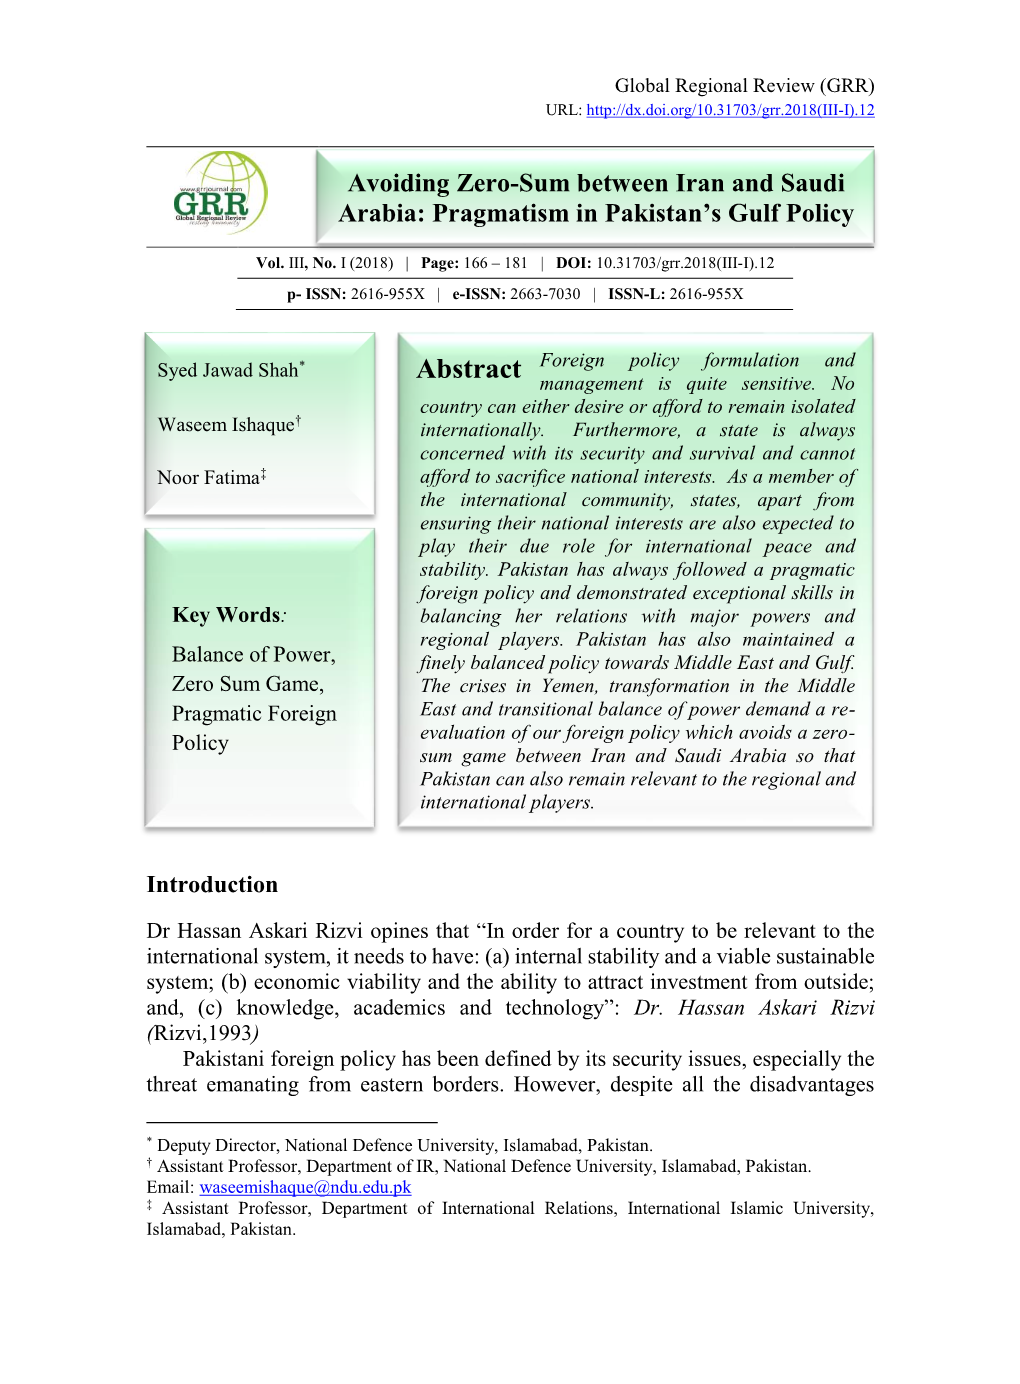 Avoiding Zero-Sum Between Iran and Saudi Arabia: Pragmatism in Pakistan's Gulf Policy